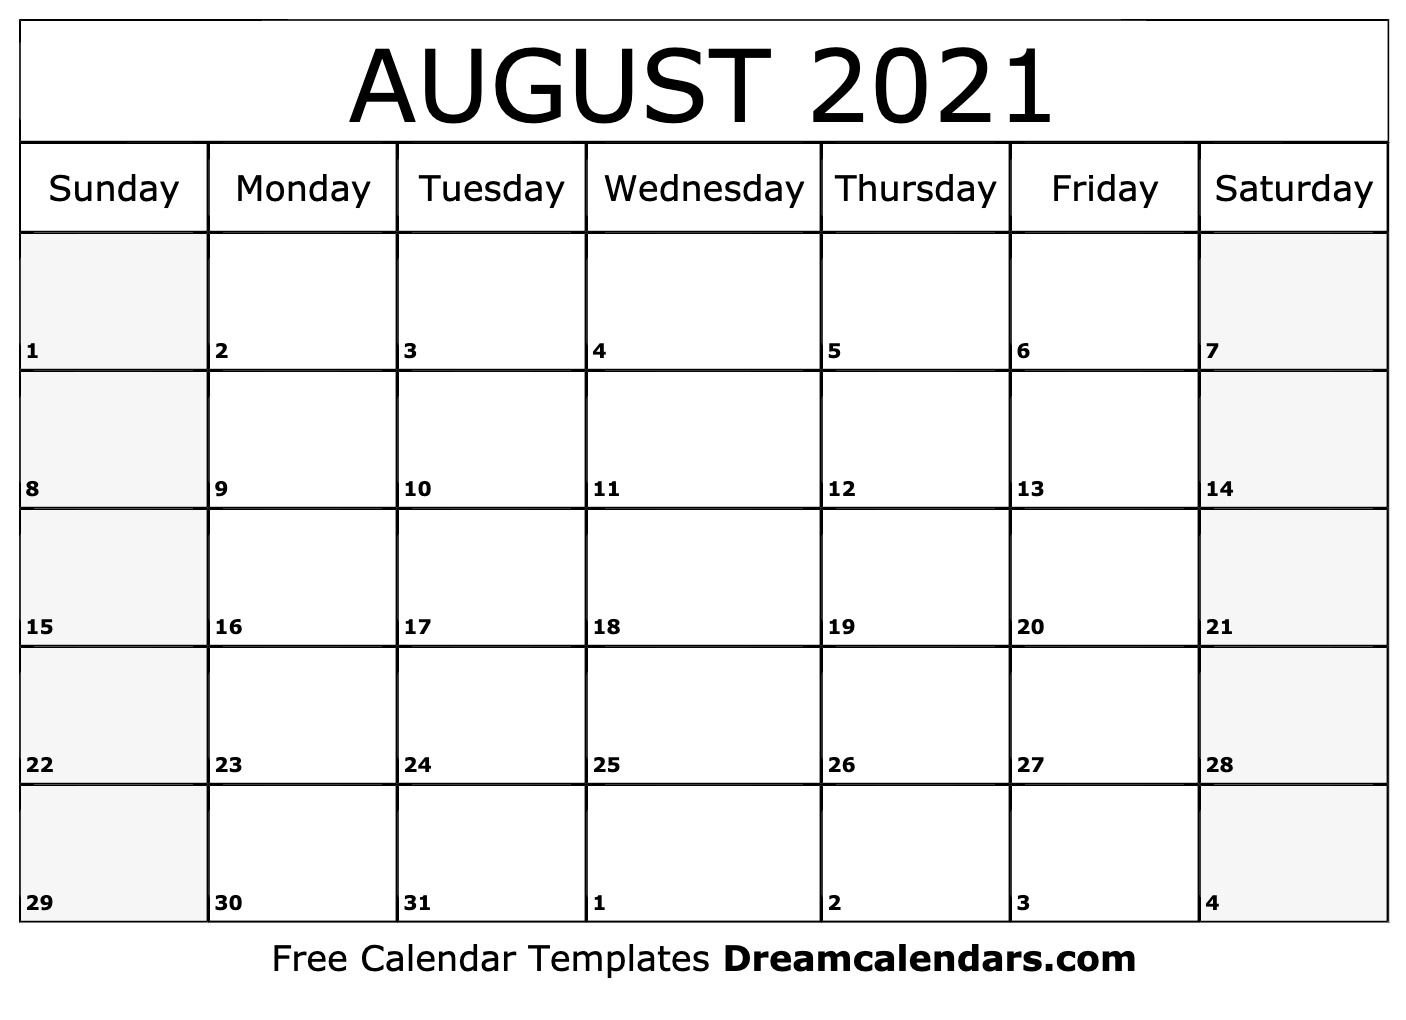 August 2021 calendar